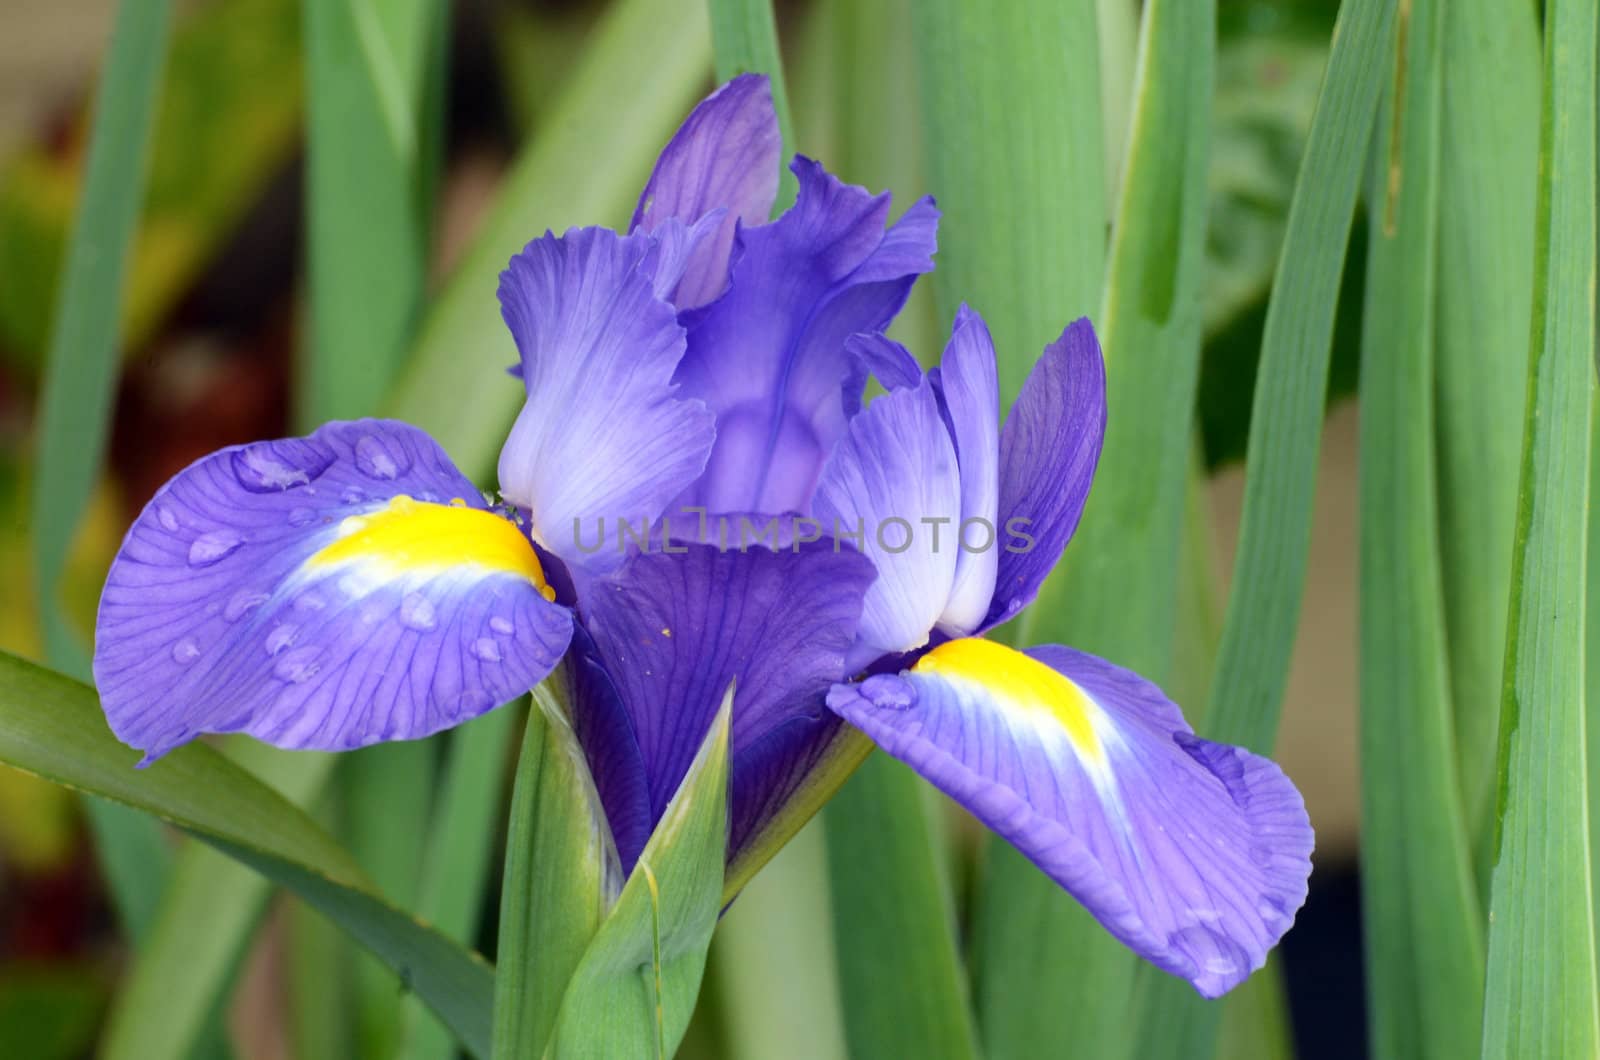 A beautiful blue flower named Iris